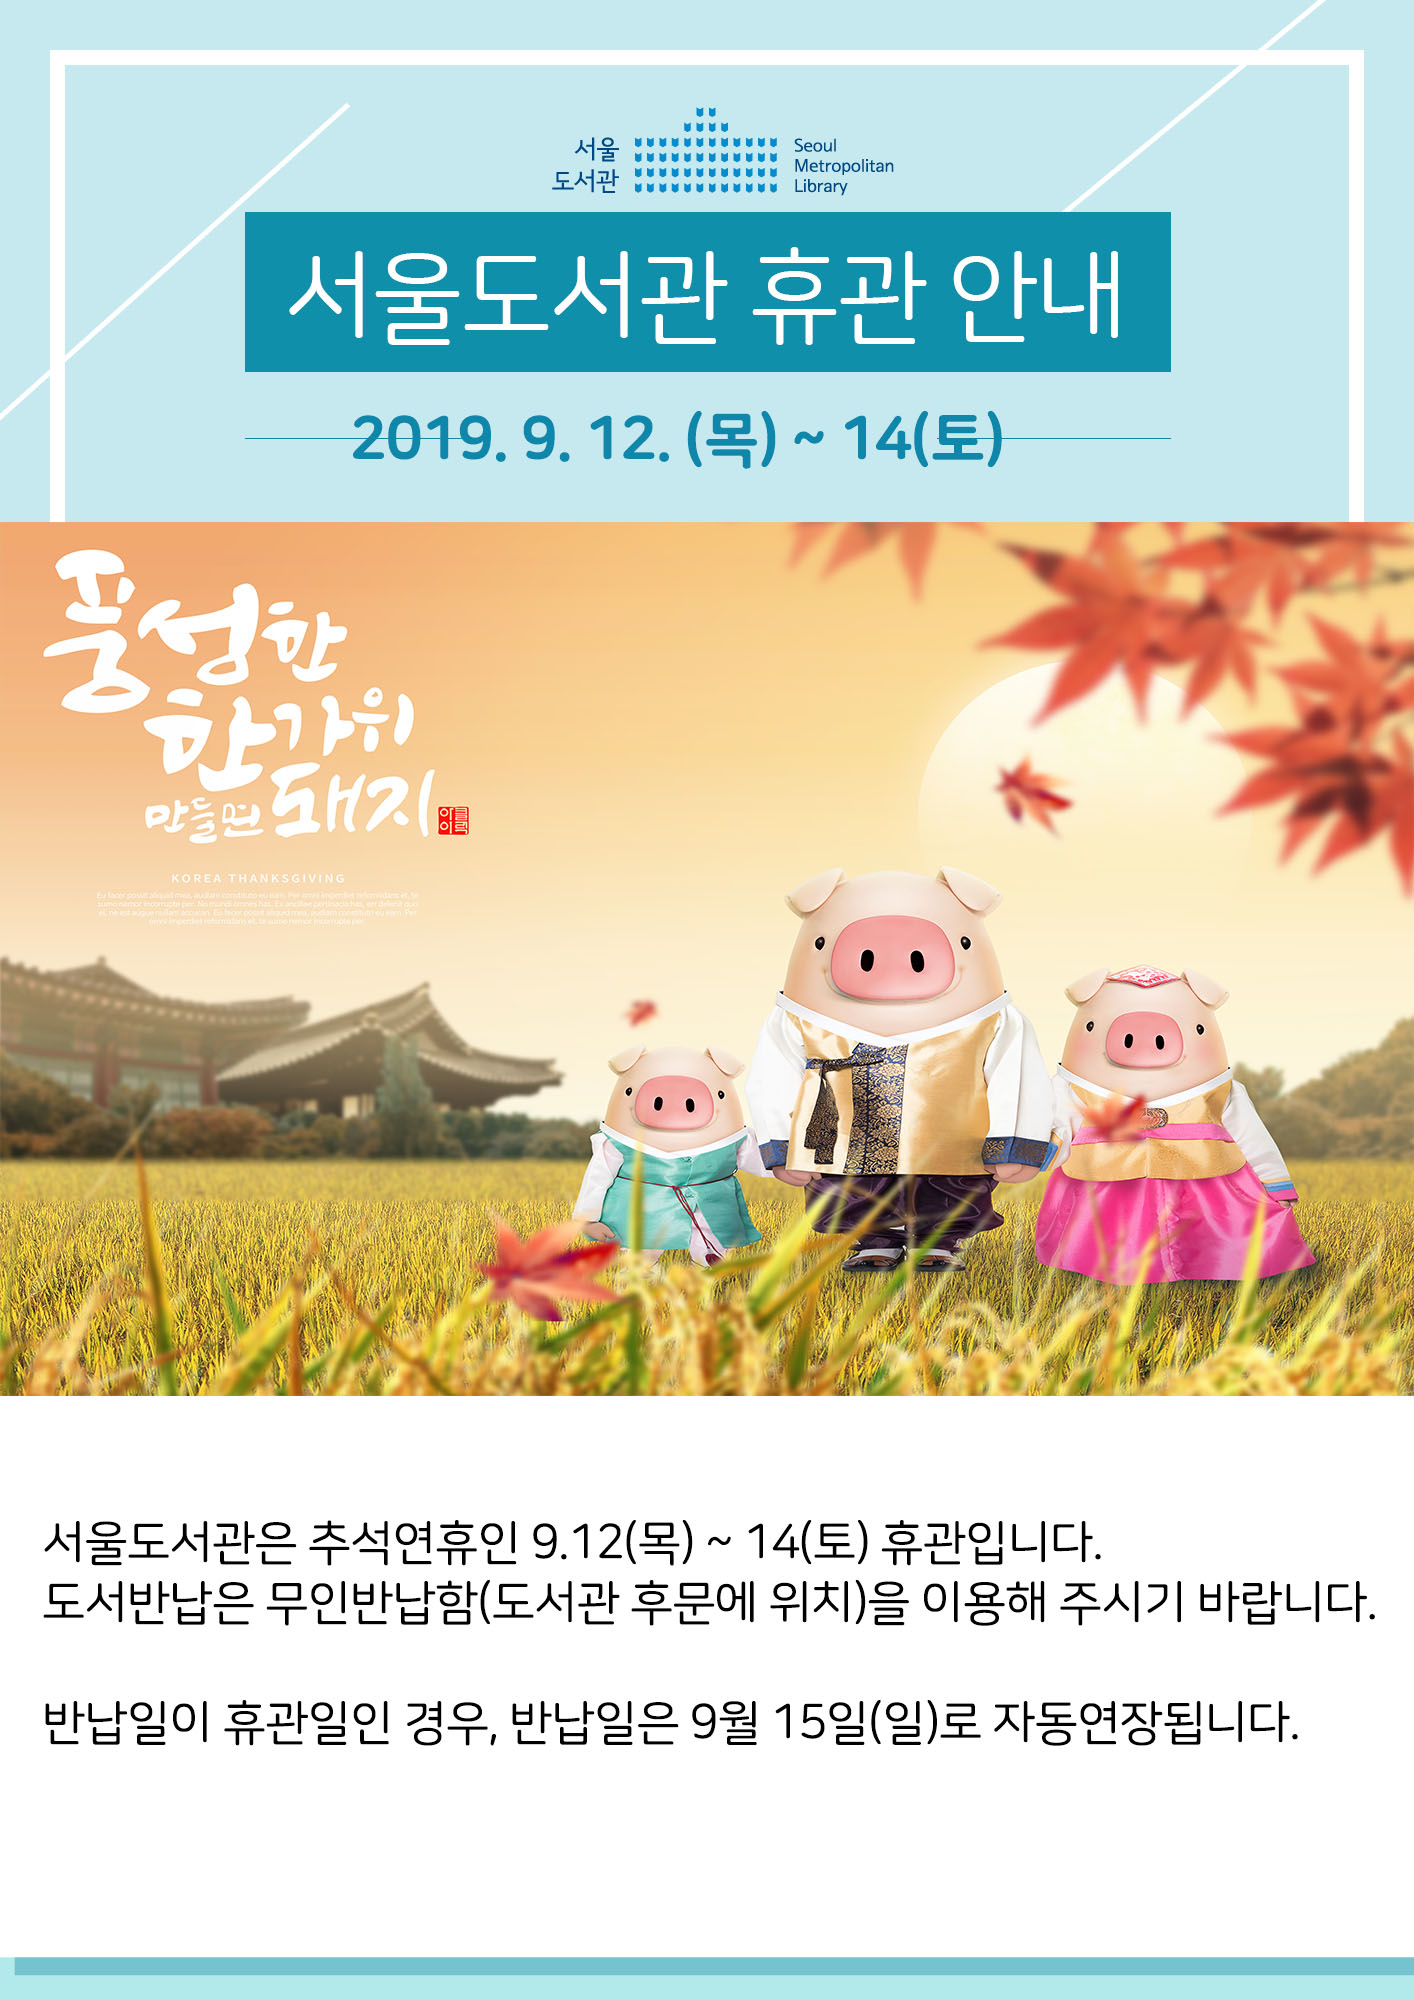 서울도서관 추석 휴관 안내(9.12(목)~14(토)) 포스터